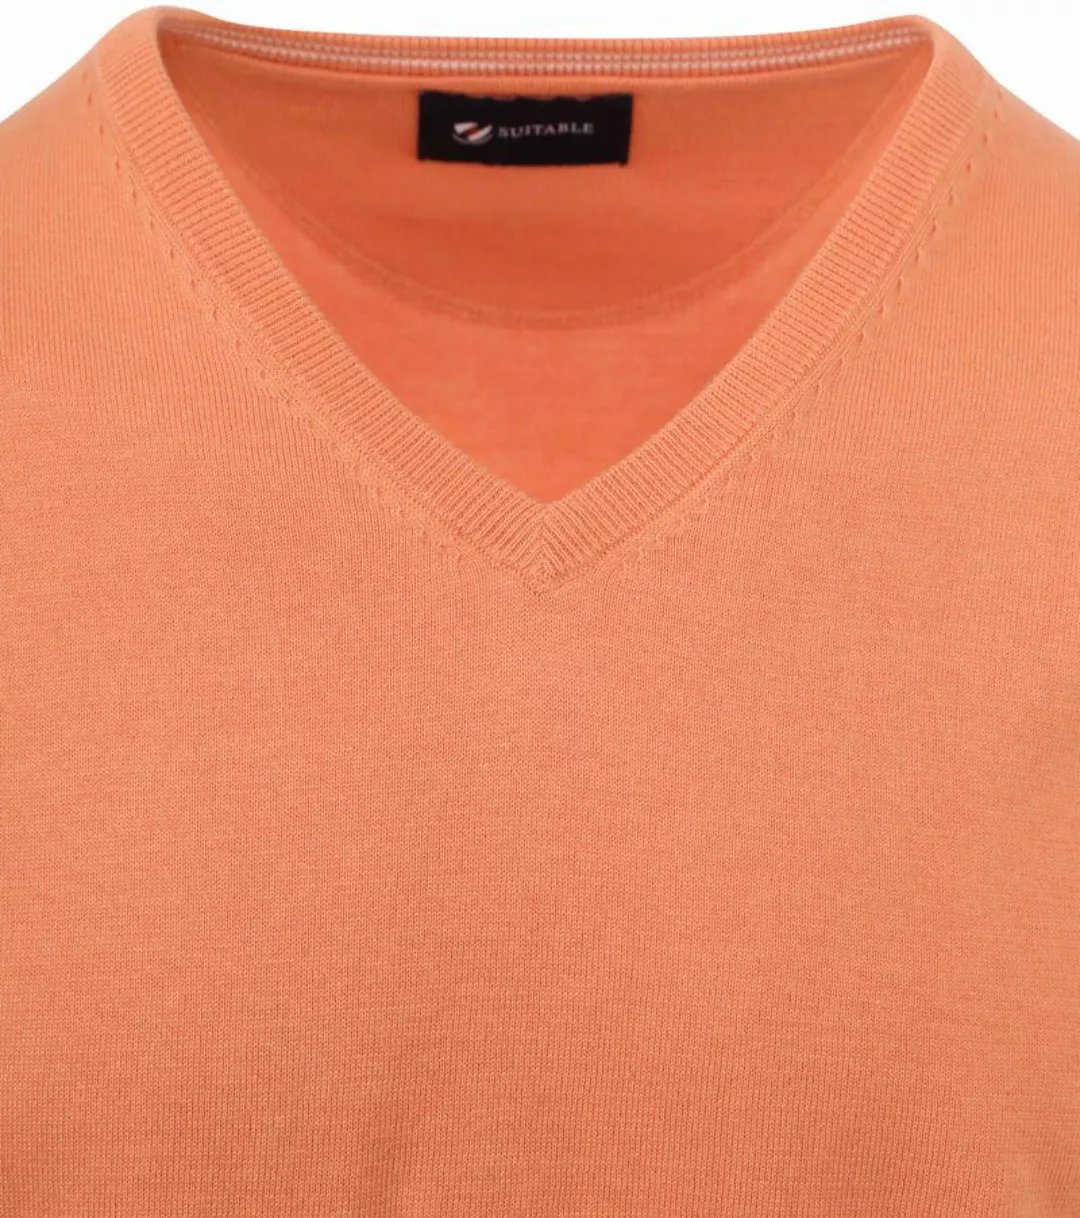 Suitable Pullover Vini V-Ausschnitt Orange - Größe XL günstig online kaufen